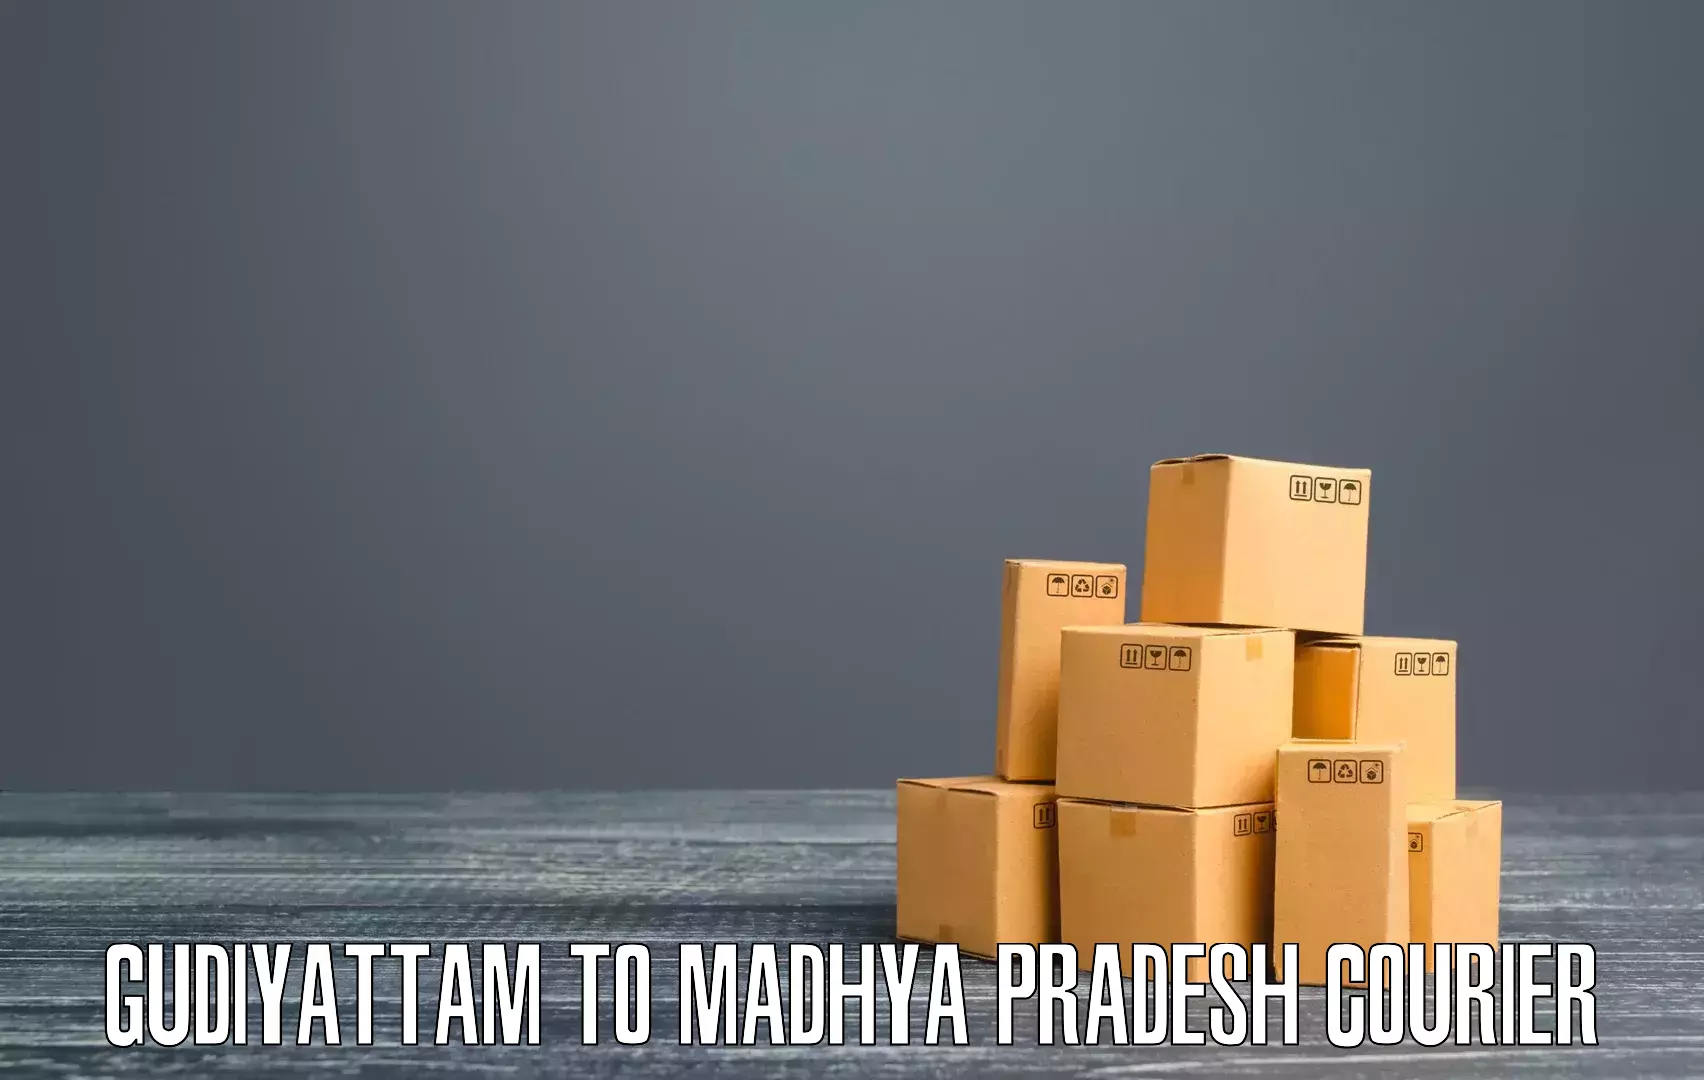 High-priority parcel service in Gudiyattam to Shujalpur